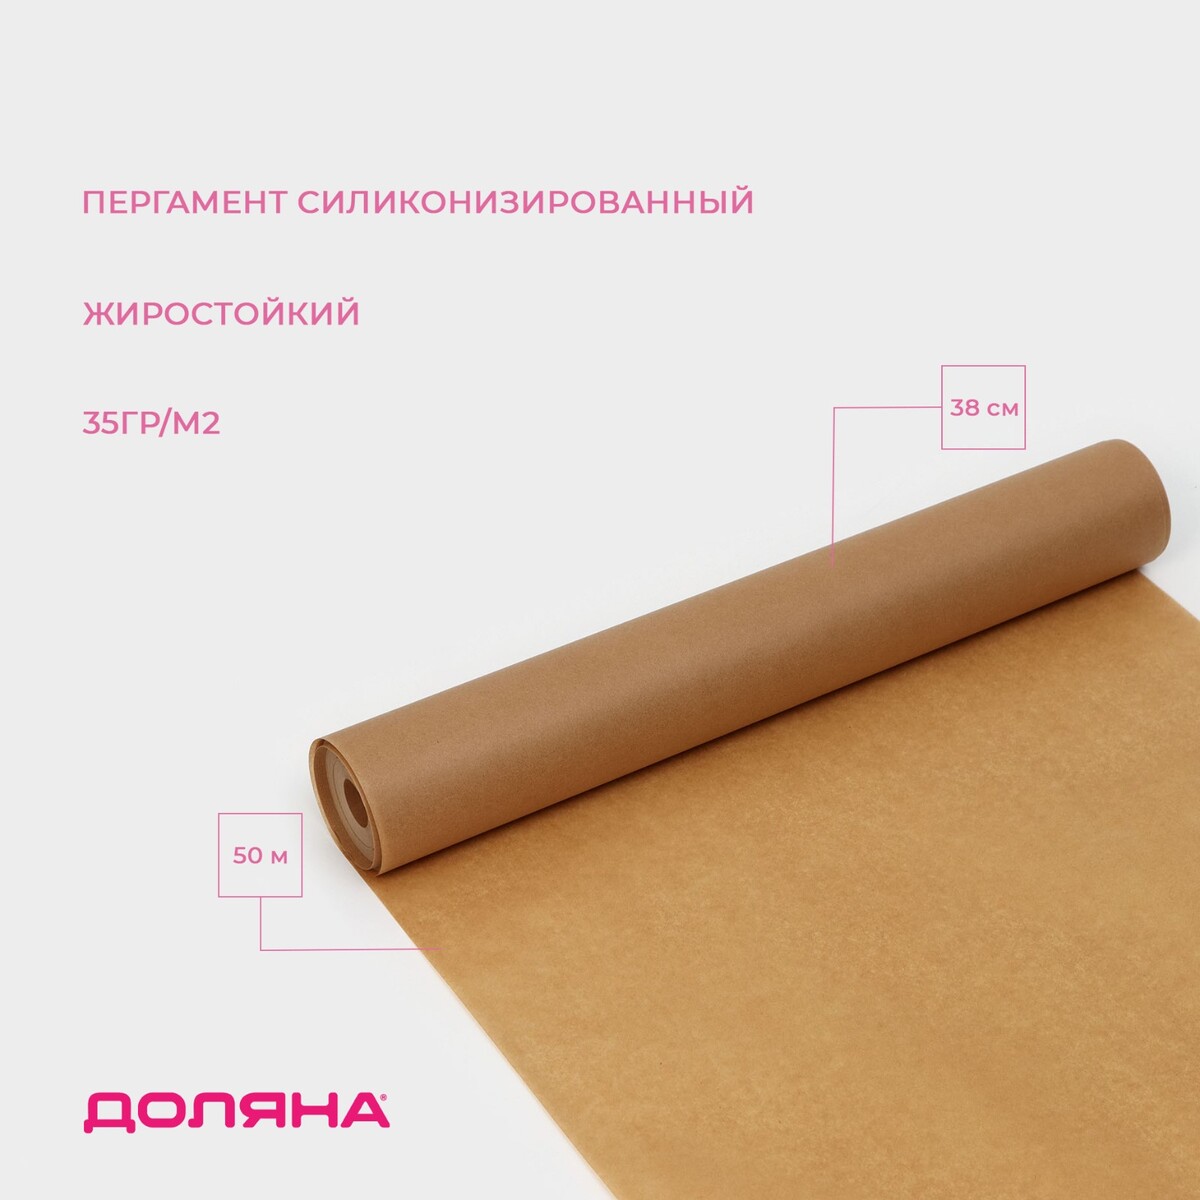 Пергамент силиконизированный доляна, 38 см х 50 м, коричневый, жиростойкий пергамент силиконизированный доляна 28 см×50 м белый жиростойкий